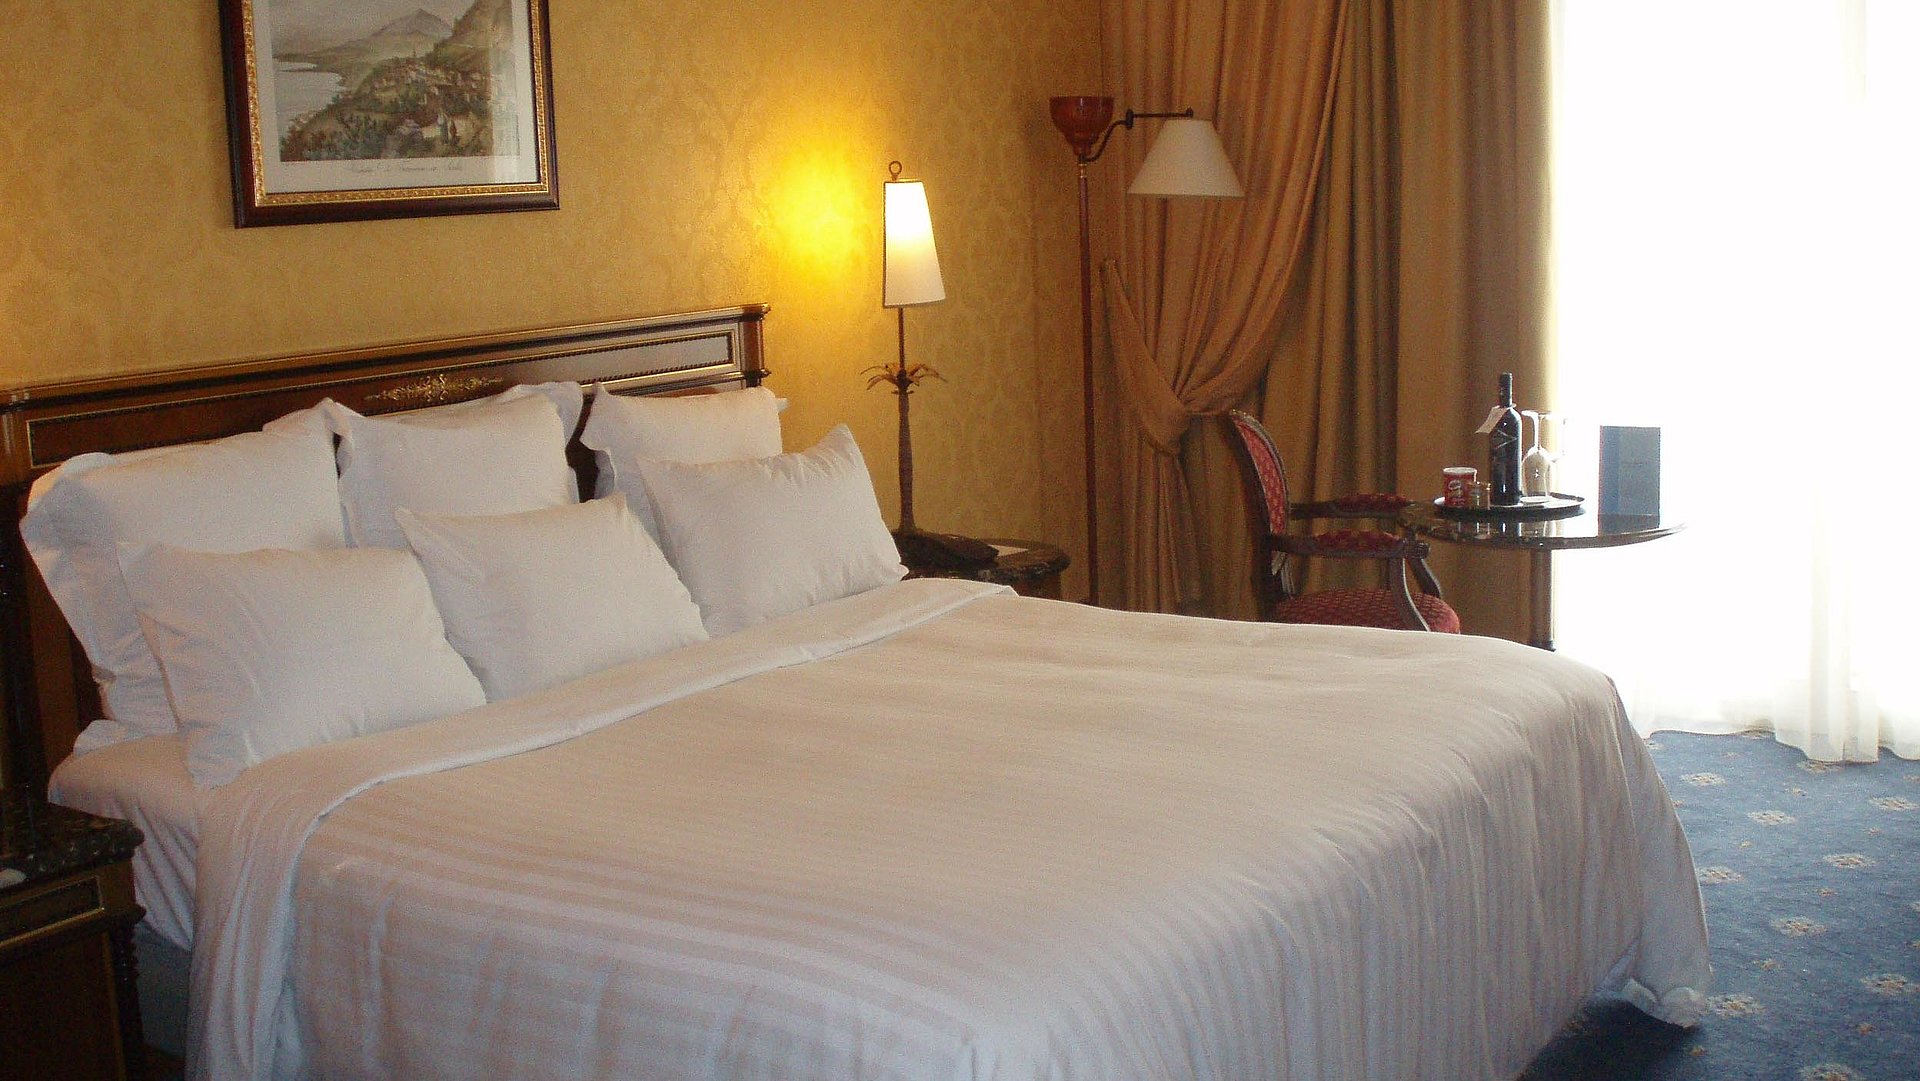 Unterkunft in Kempten im Allgäu - sehr ordentliches Hotelzimmer mit großem Bett, warmer Nachtlampe und mittelgroßem Wandgemälde